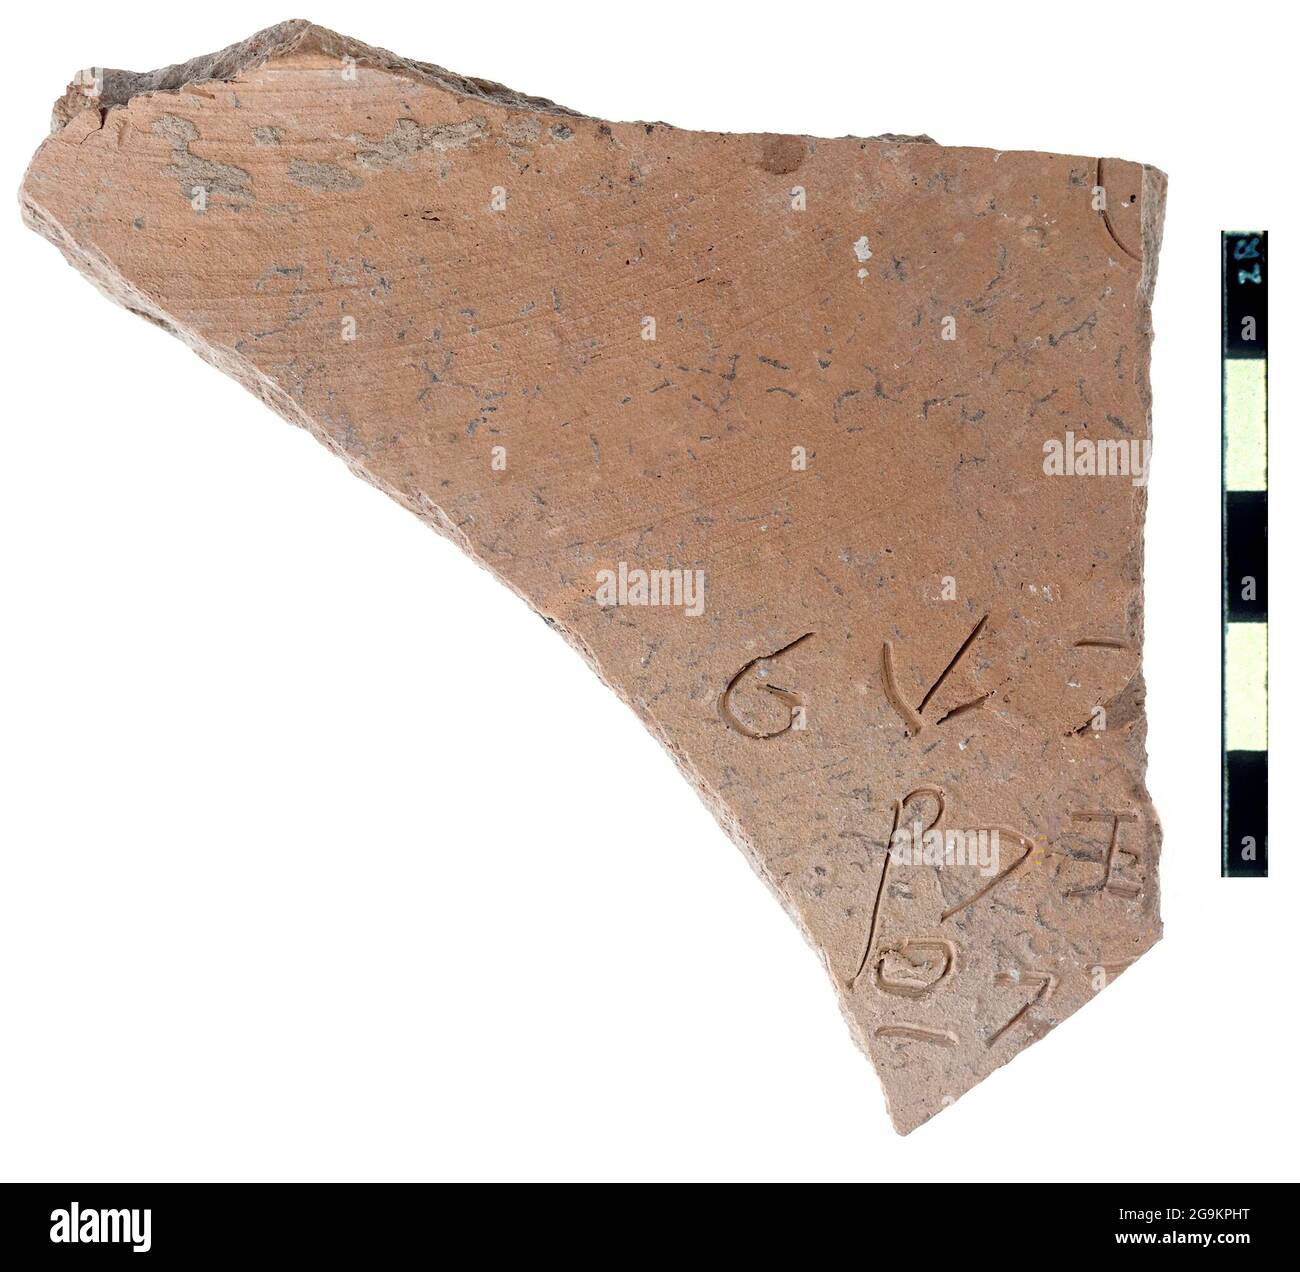 6869. Inscription de Canaanite sur un sord en céramique datant c. 1130 av. J.-C. trouvé dans les fouilles d'un temple cananéen à Lachish. Banque D'Images